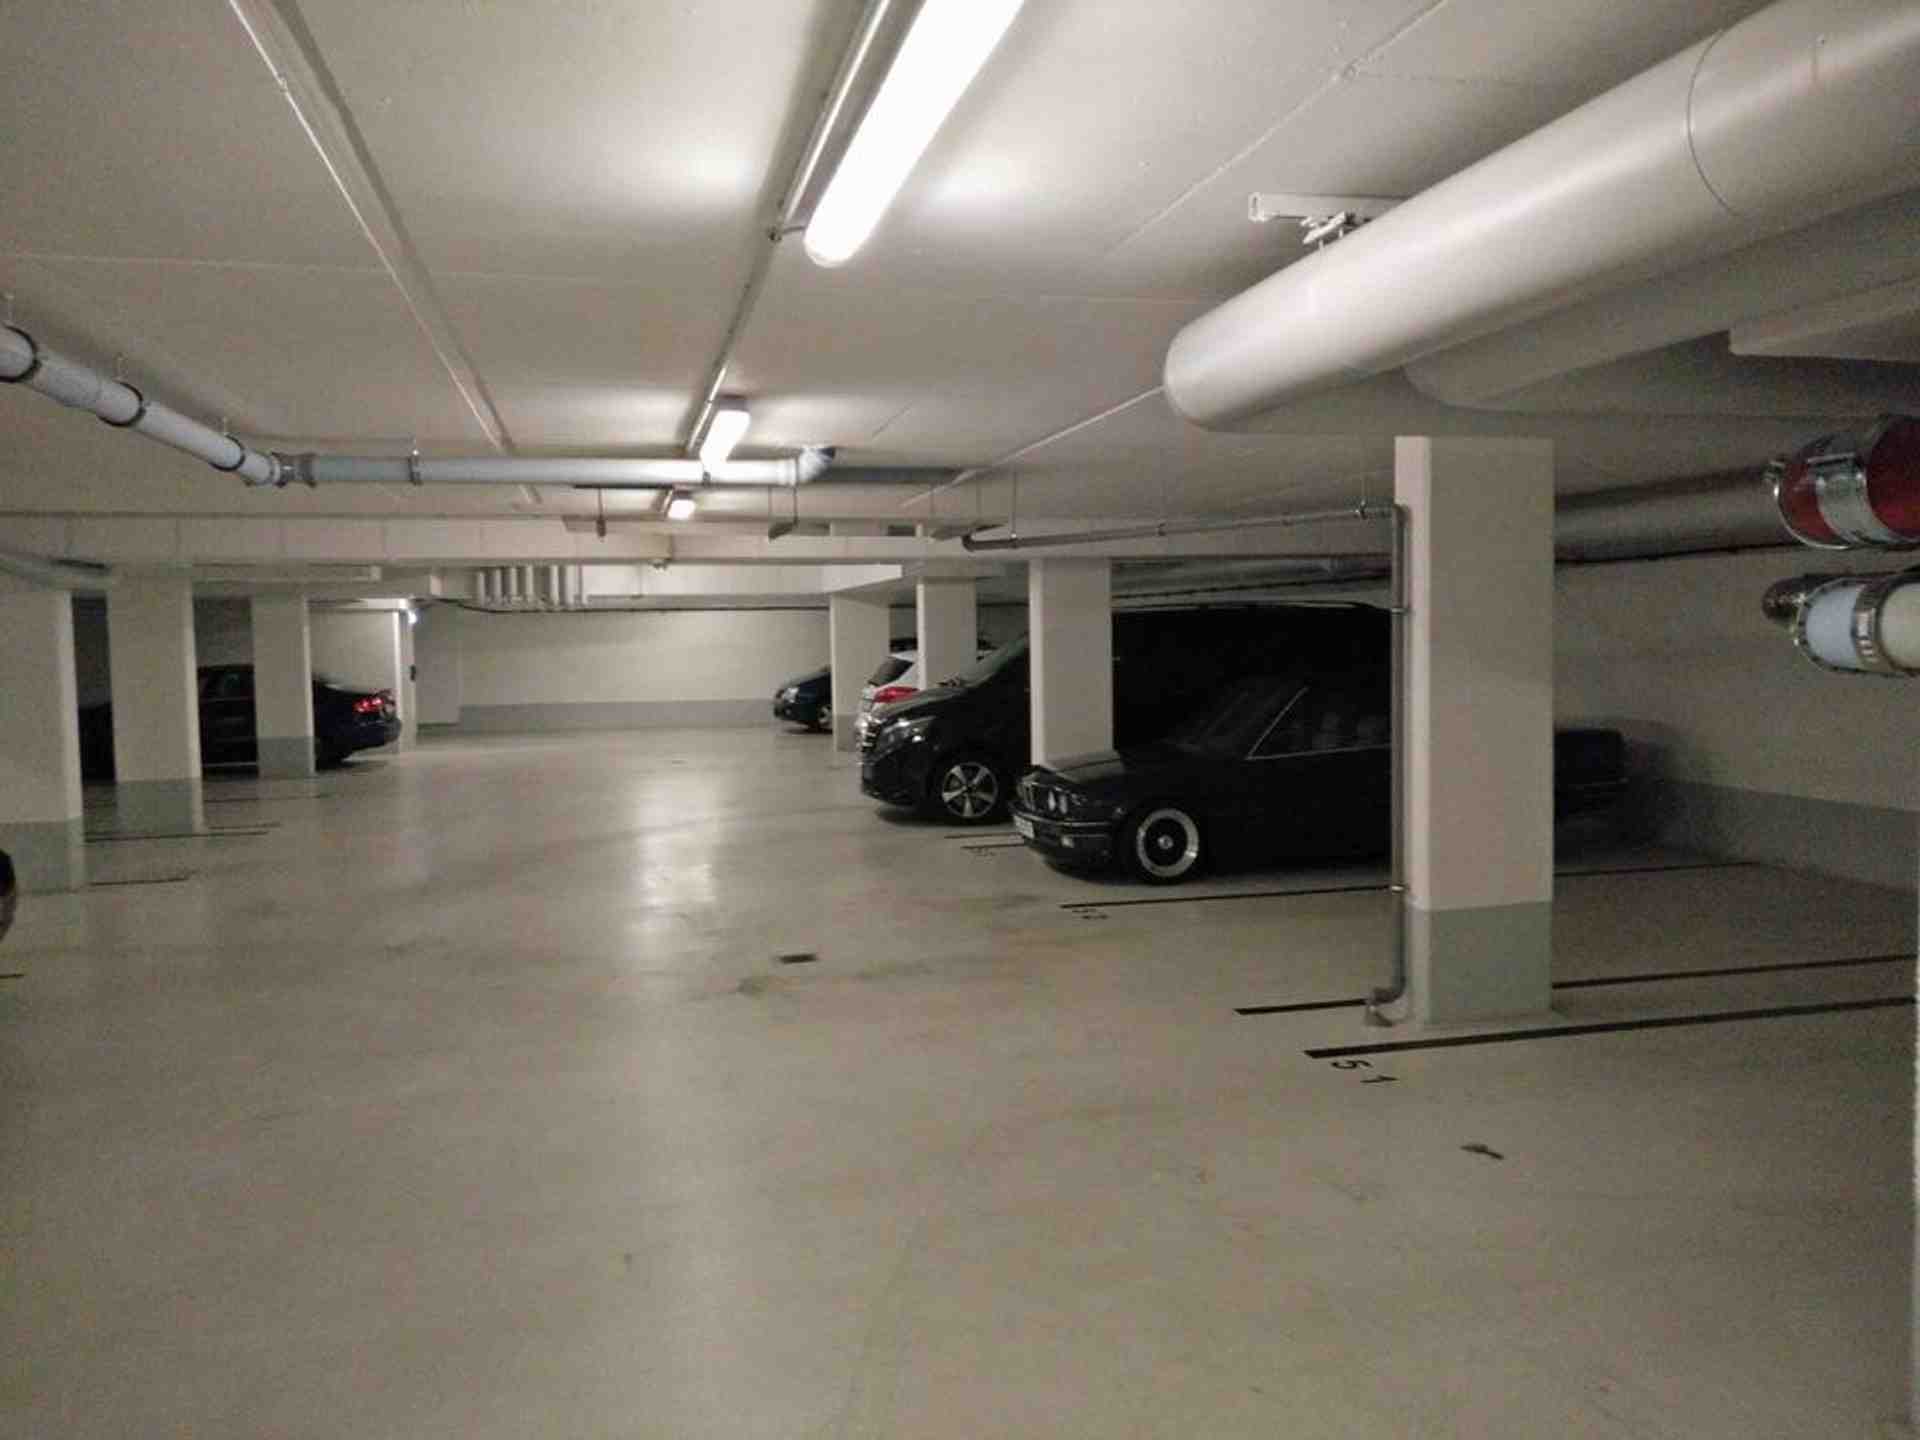 Underground garage/Tiefgarage in Berlin Mitte - Waldemarstraße, 10179 Berlin - Fotka 1 z 1